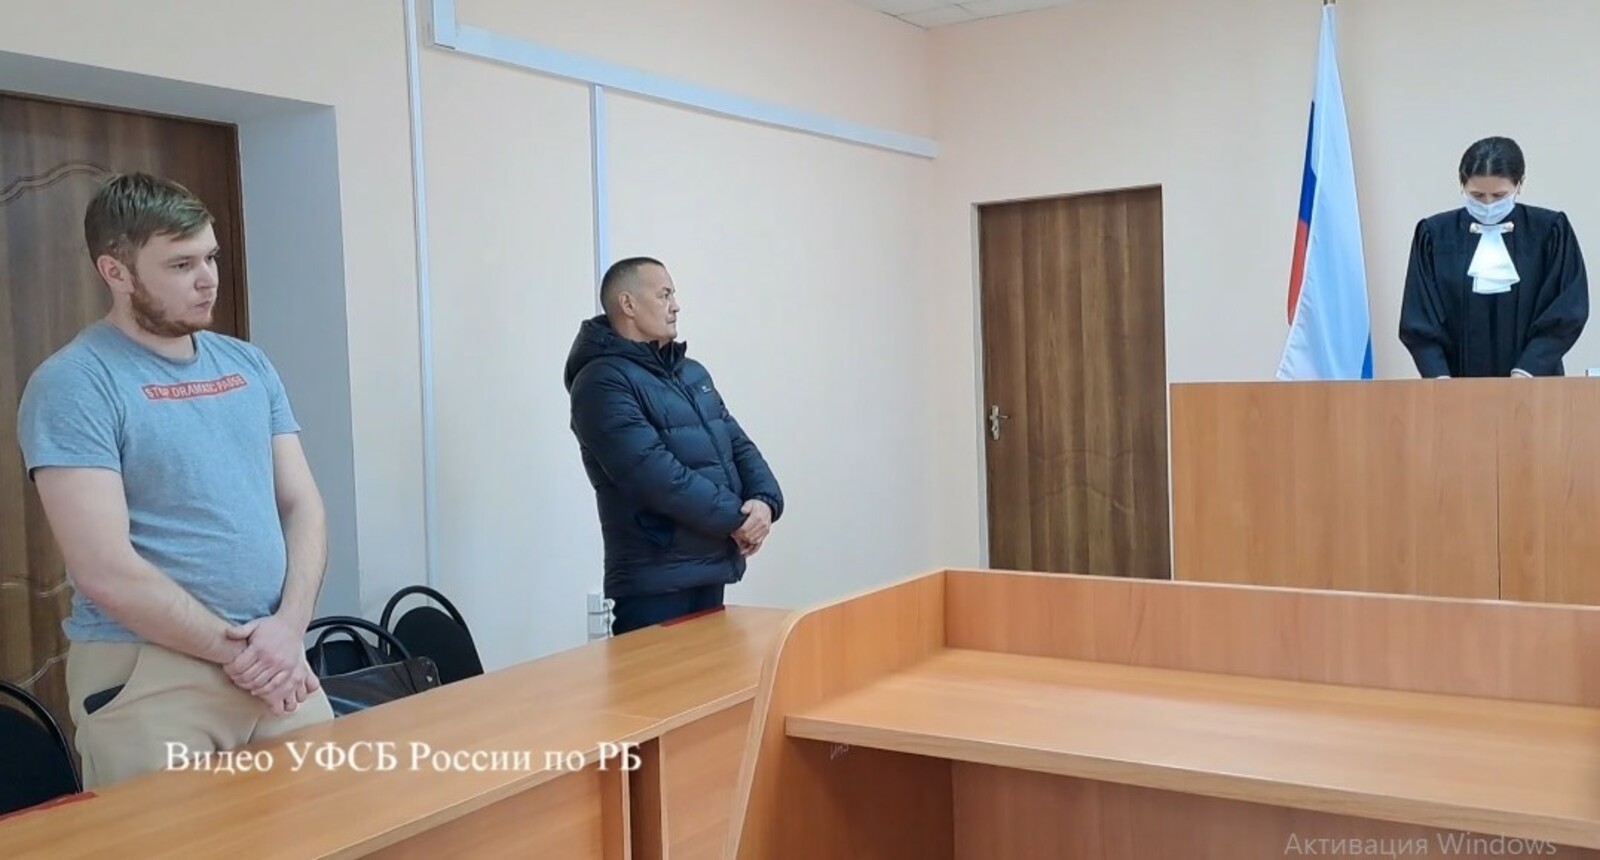 В Башкирии сотрудник «Вымпелкома» торговал информацией о клиентах